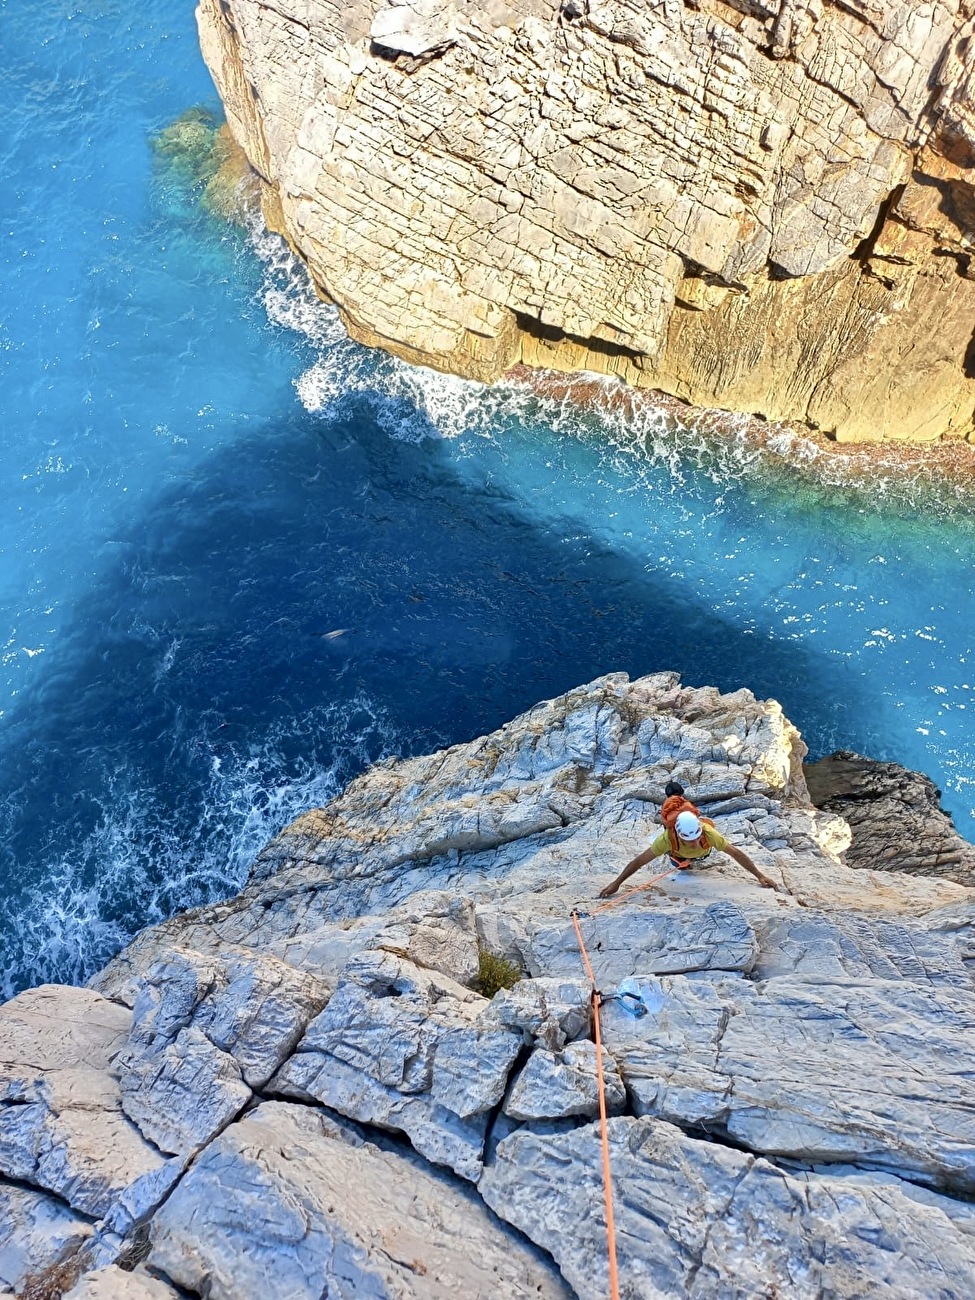 L'ascension du rocher de Buggerru en Sardaigne. Par Maurizio Oviglia